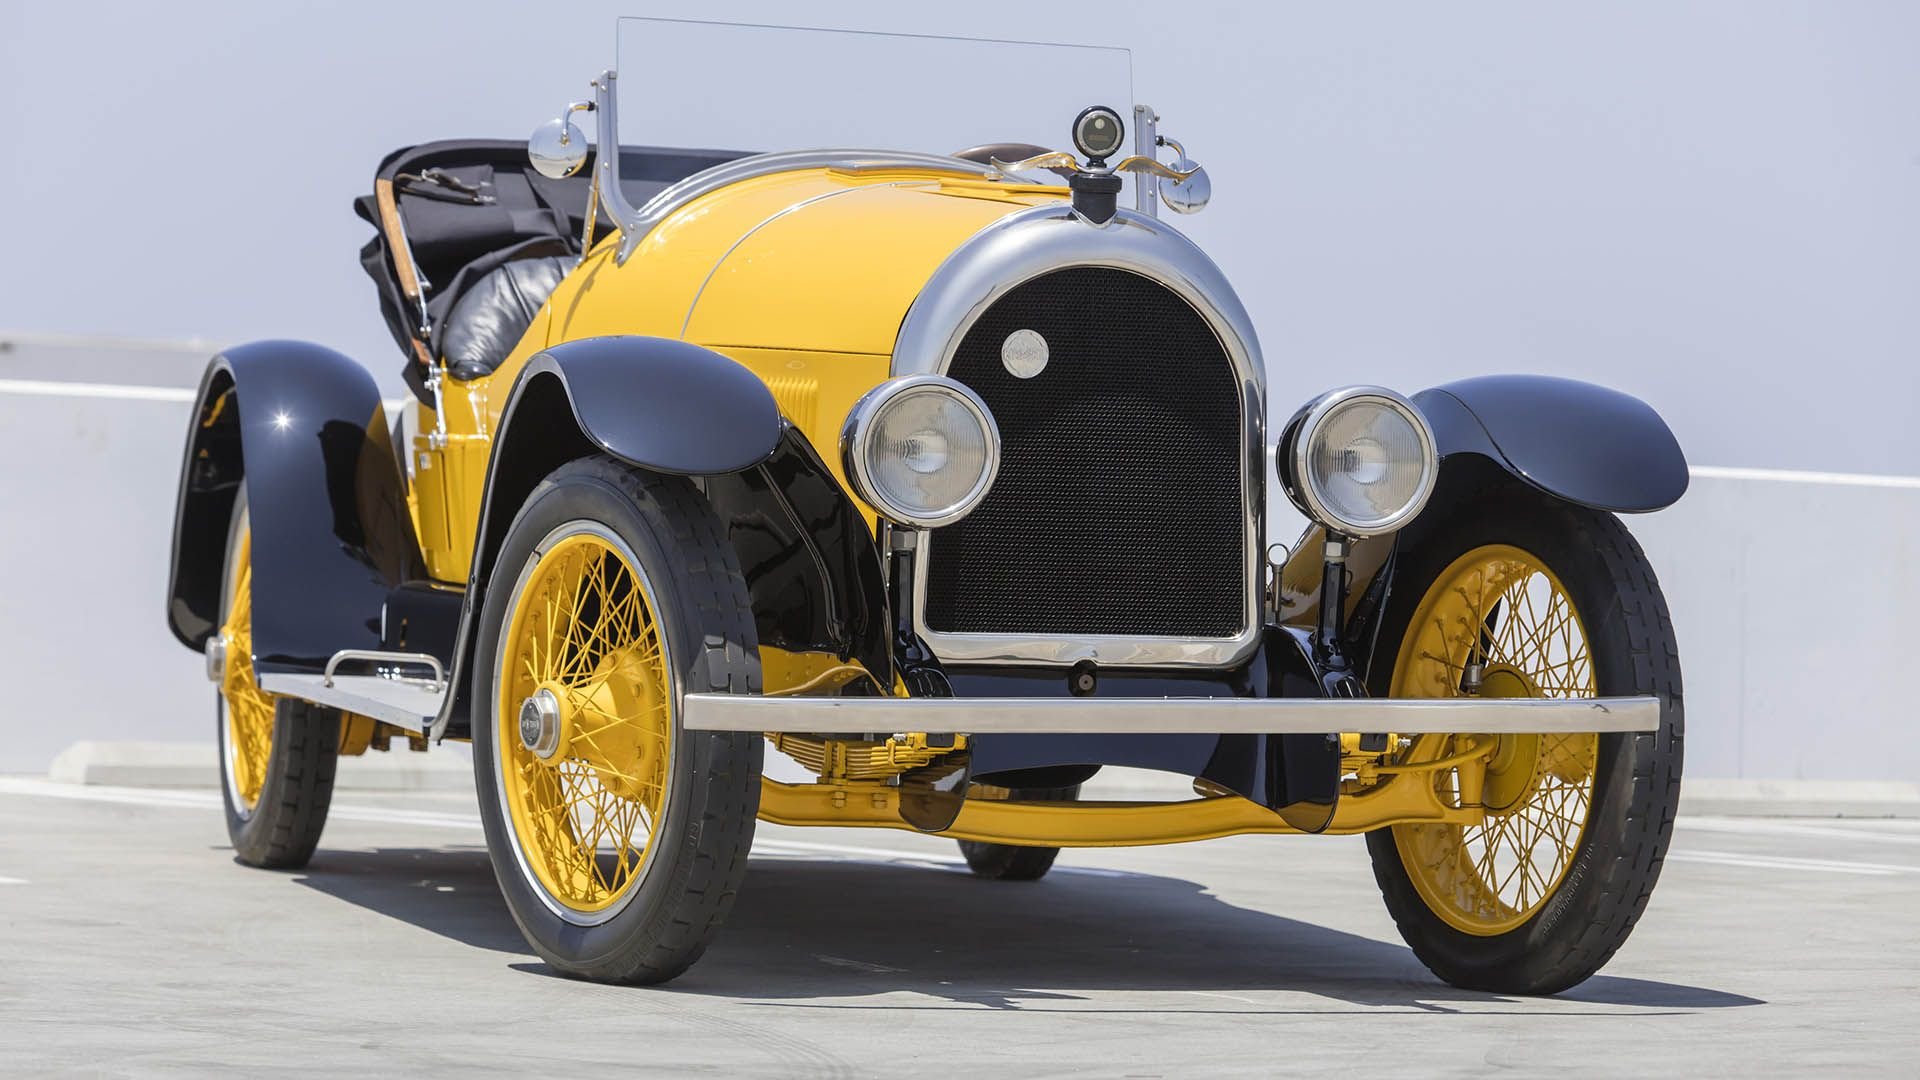 For Sale 1920 Kissel Model 6-45 "Gold Bug" Speedster